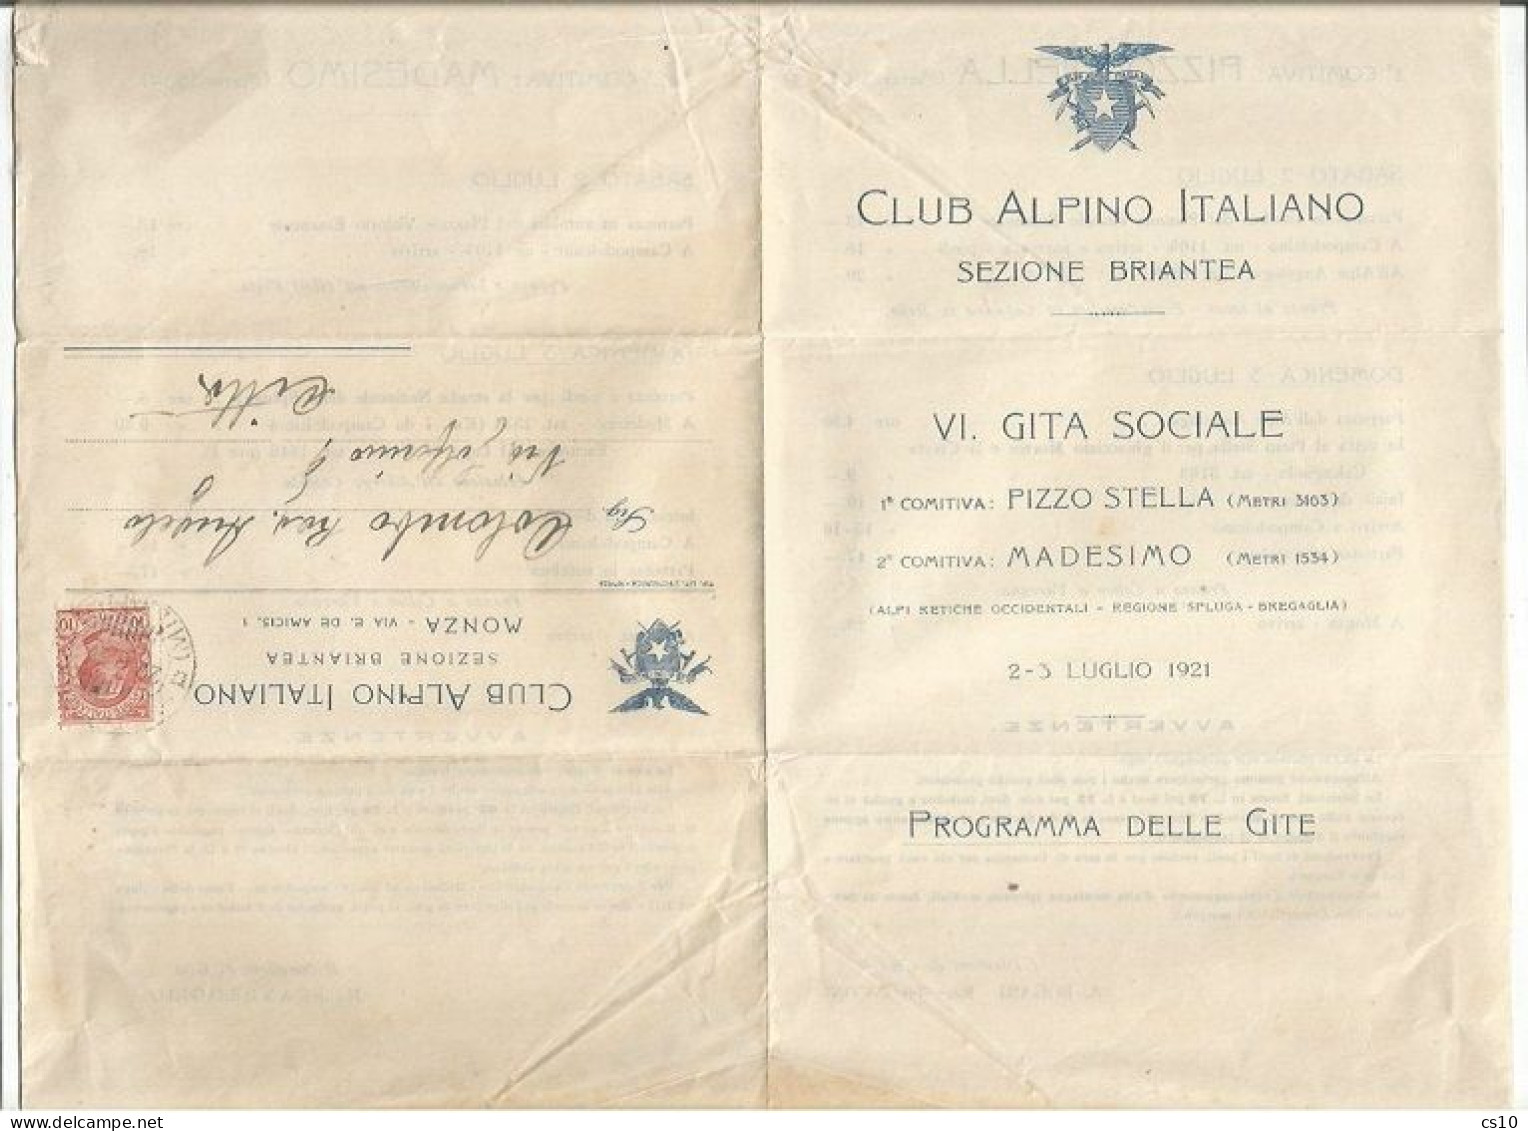 Alpinismo Mountaineering 2/3lug 1921 Programma / Invito Gita Sociale CAI Brianza Pizzo Stella / Madesimo - Mountaineering, Alpinism